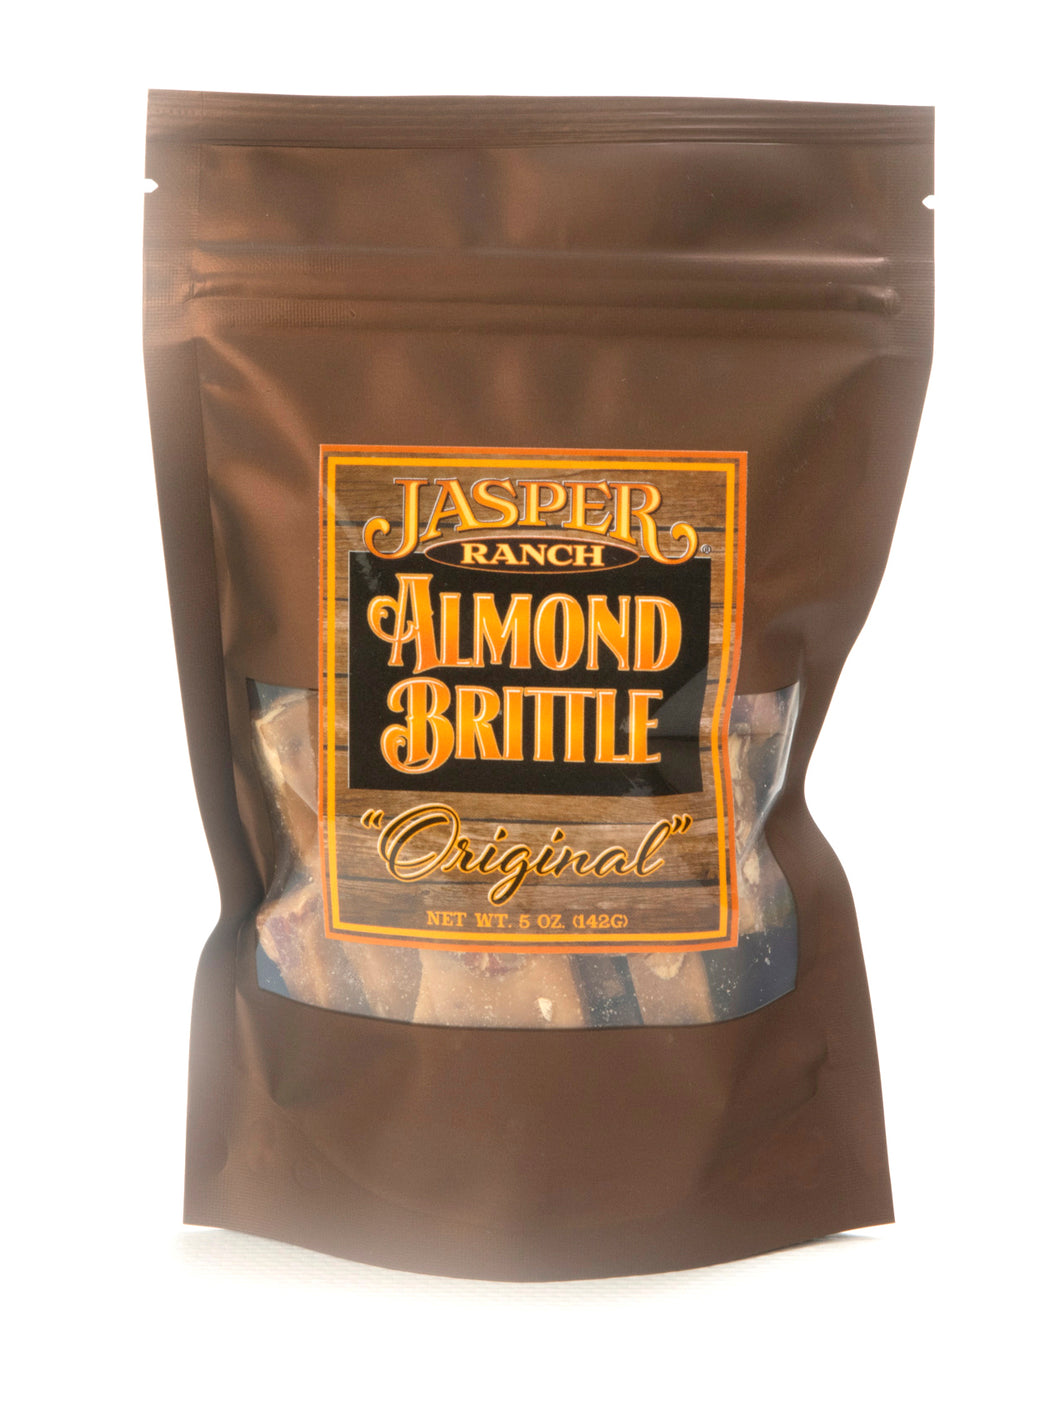 Jasper Ranch Original Almond Brittle